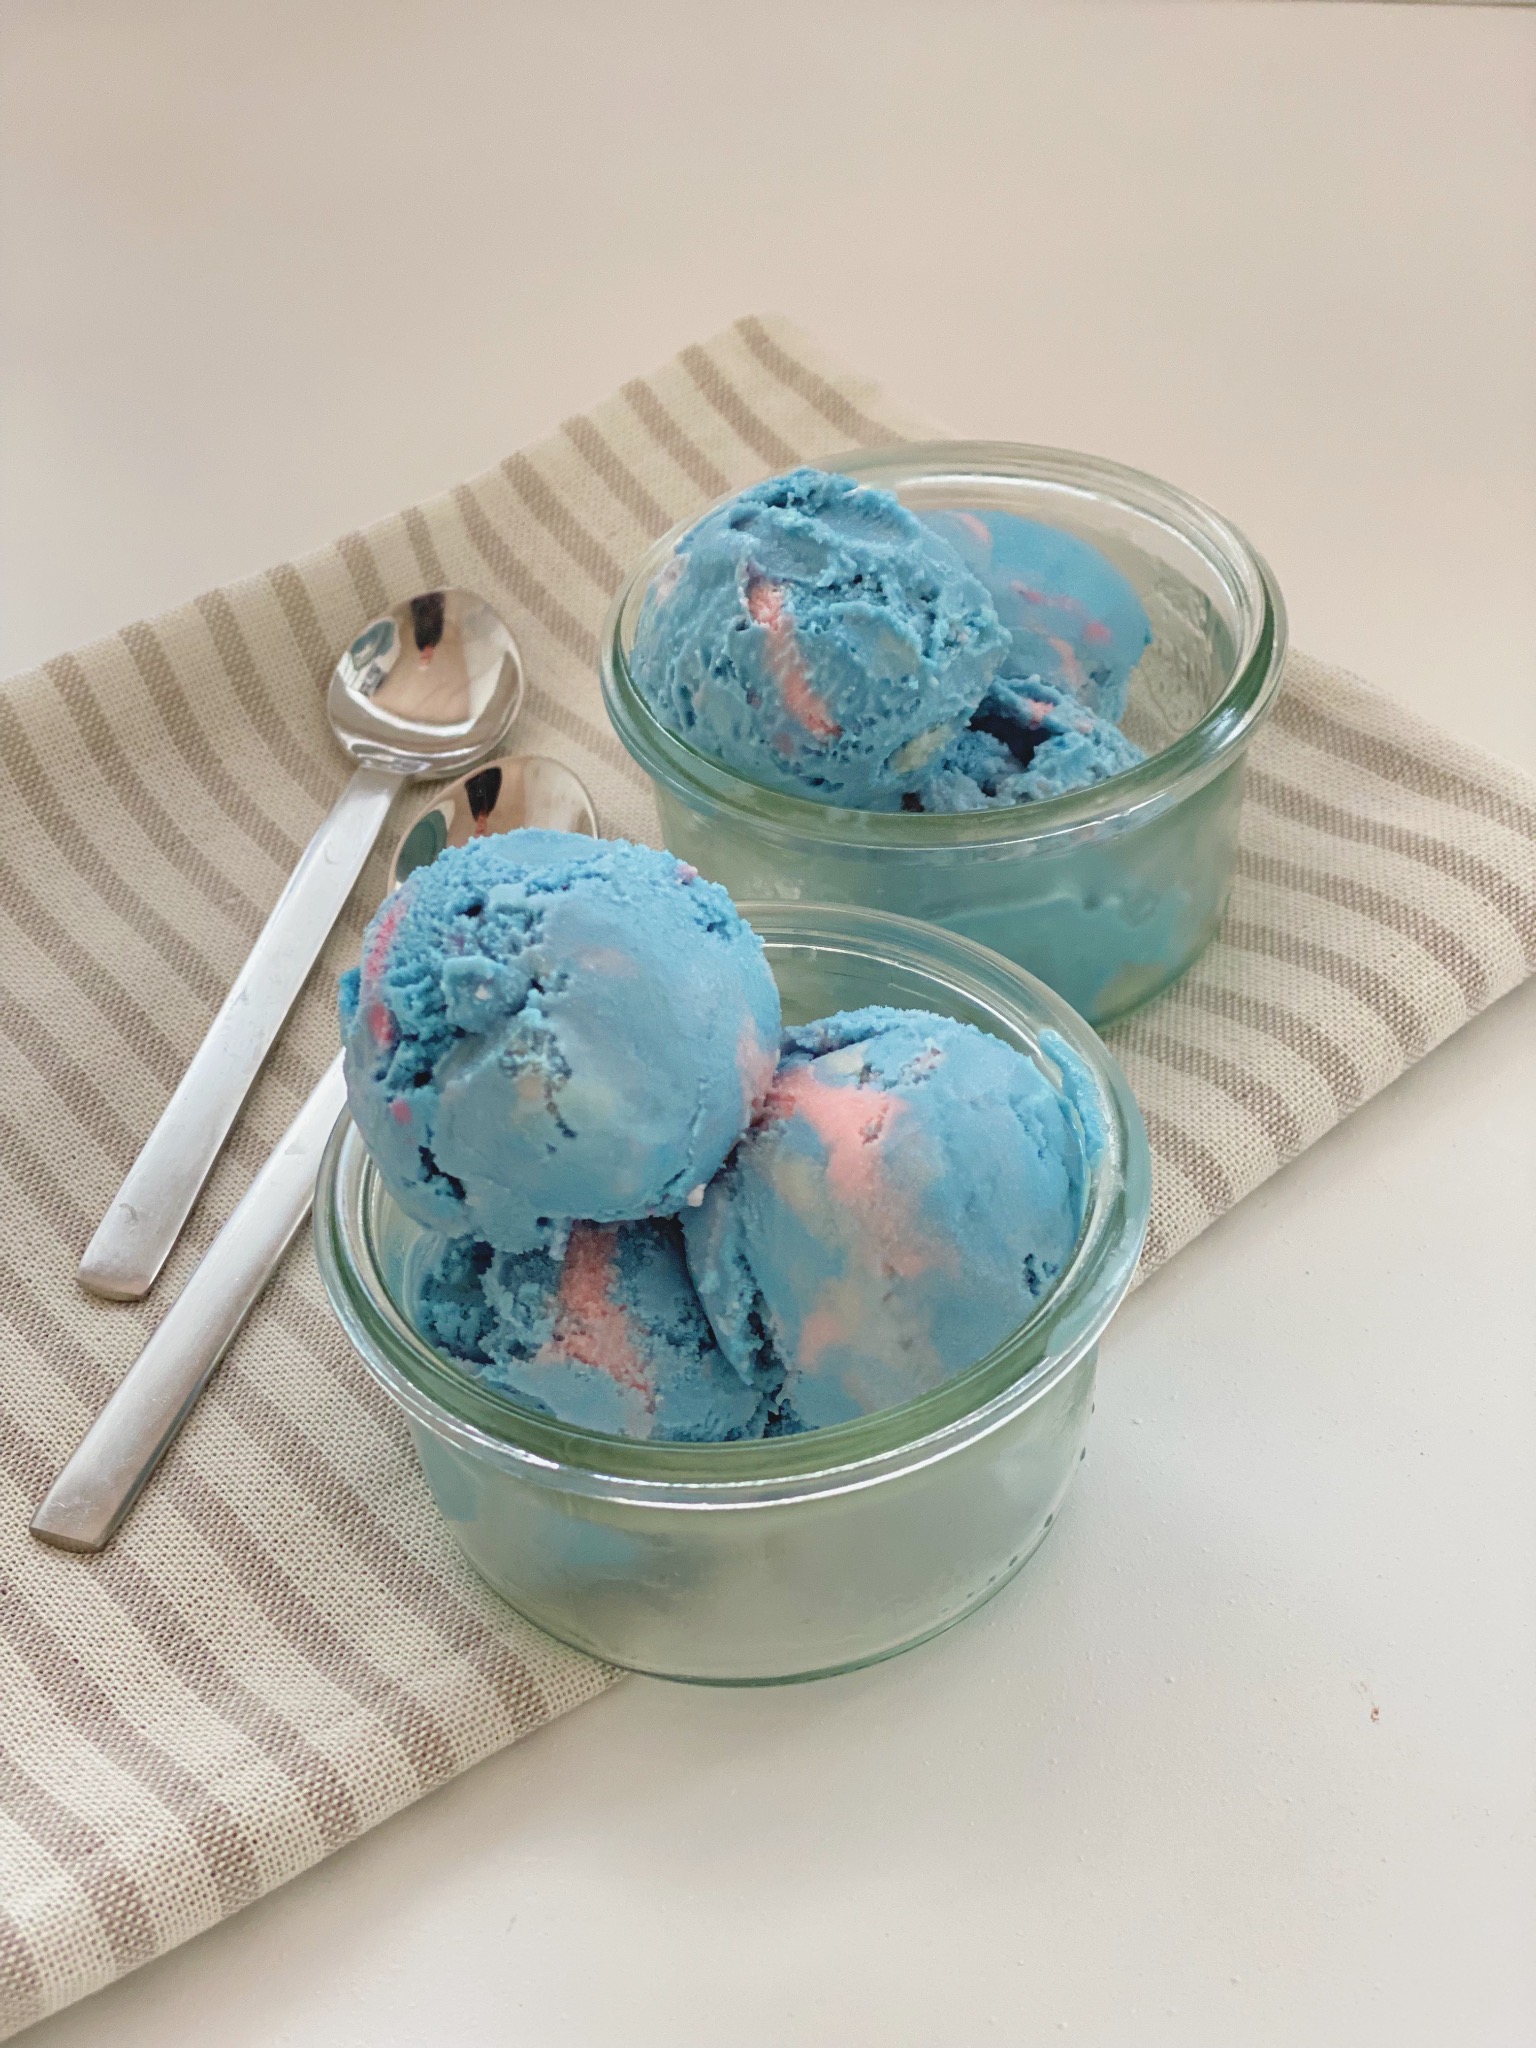 Tyggegummi is i to glasskåle set ind fra siden af og med en stribet serviet og to teskeer ved siden af. Isen er lyseblå og lyserød